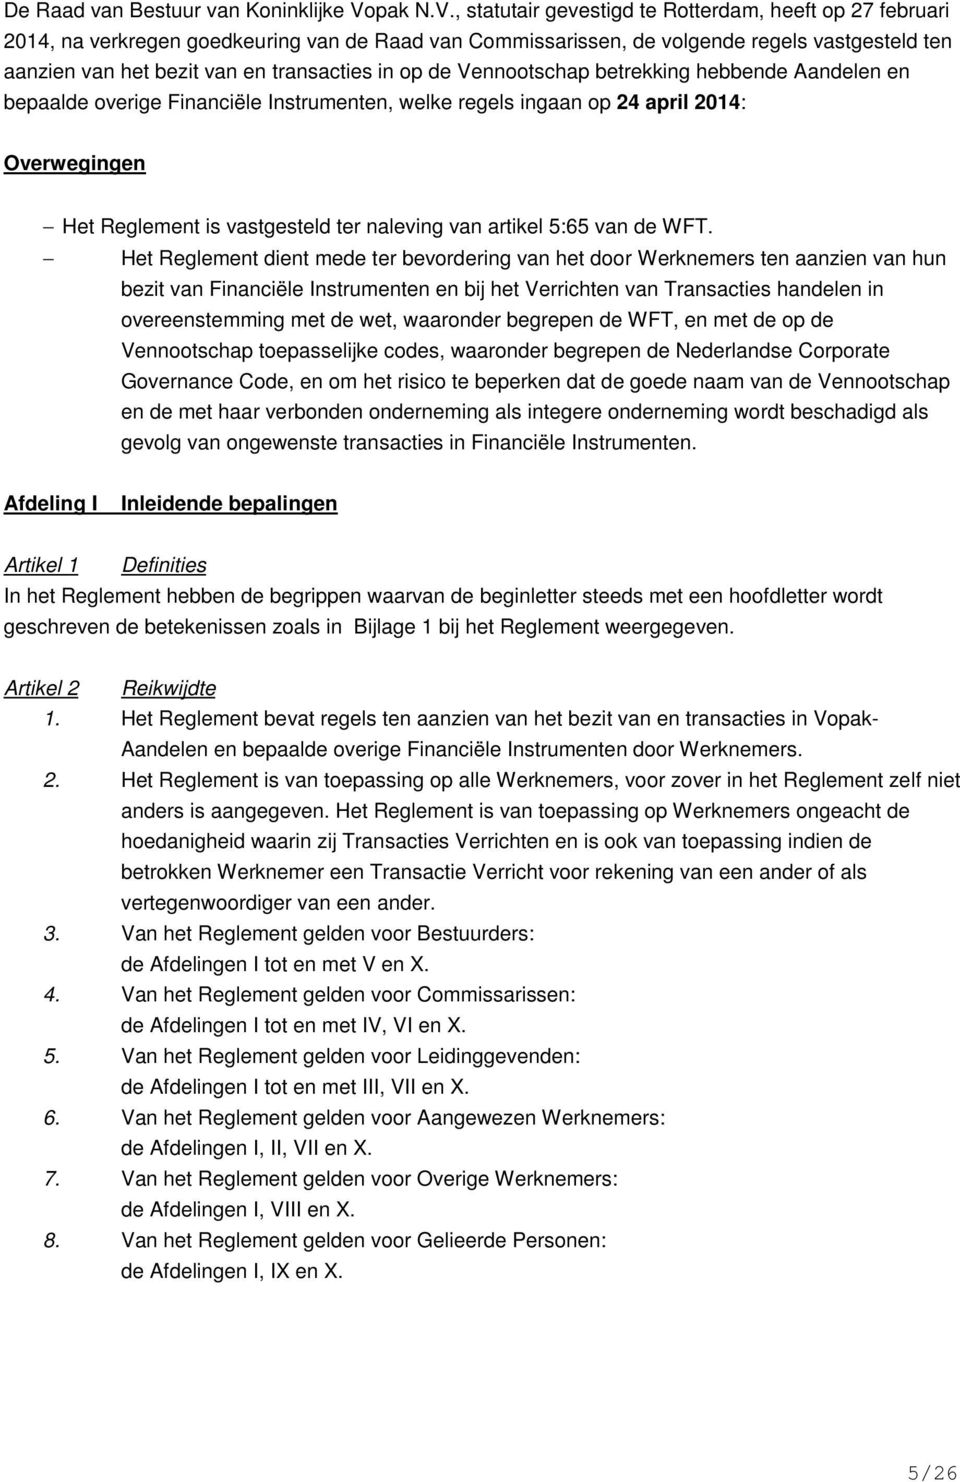 , statutair gevestigd te Rotterdam, heeft op 27 februari 2014, na verkregen goedkeuring van de Raad van Commissarissen, de volgende regels vastgesteld ten aanzien van het bezit van en transacties in